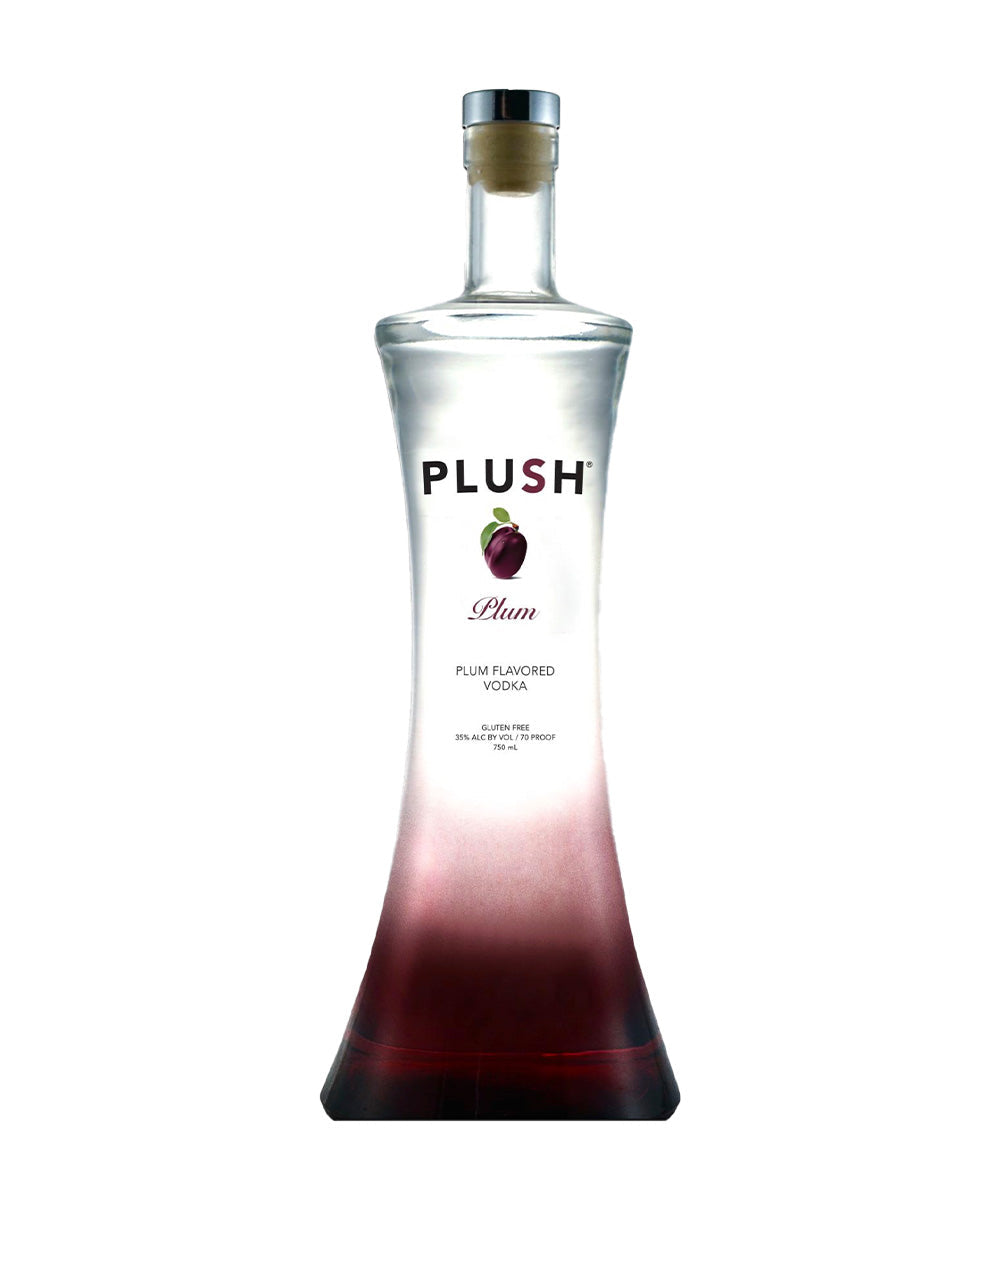 PLUSH Vodka Premium Plum